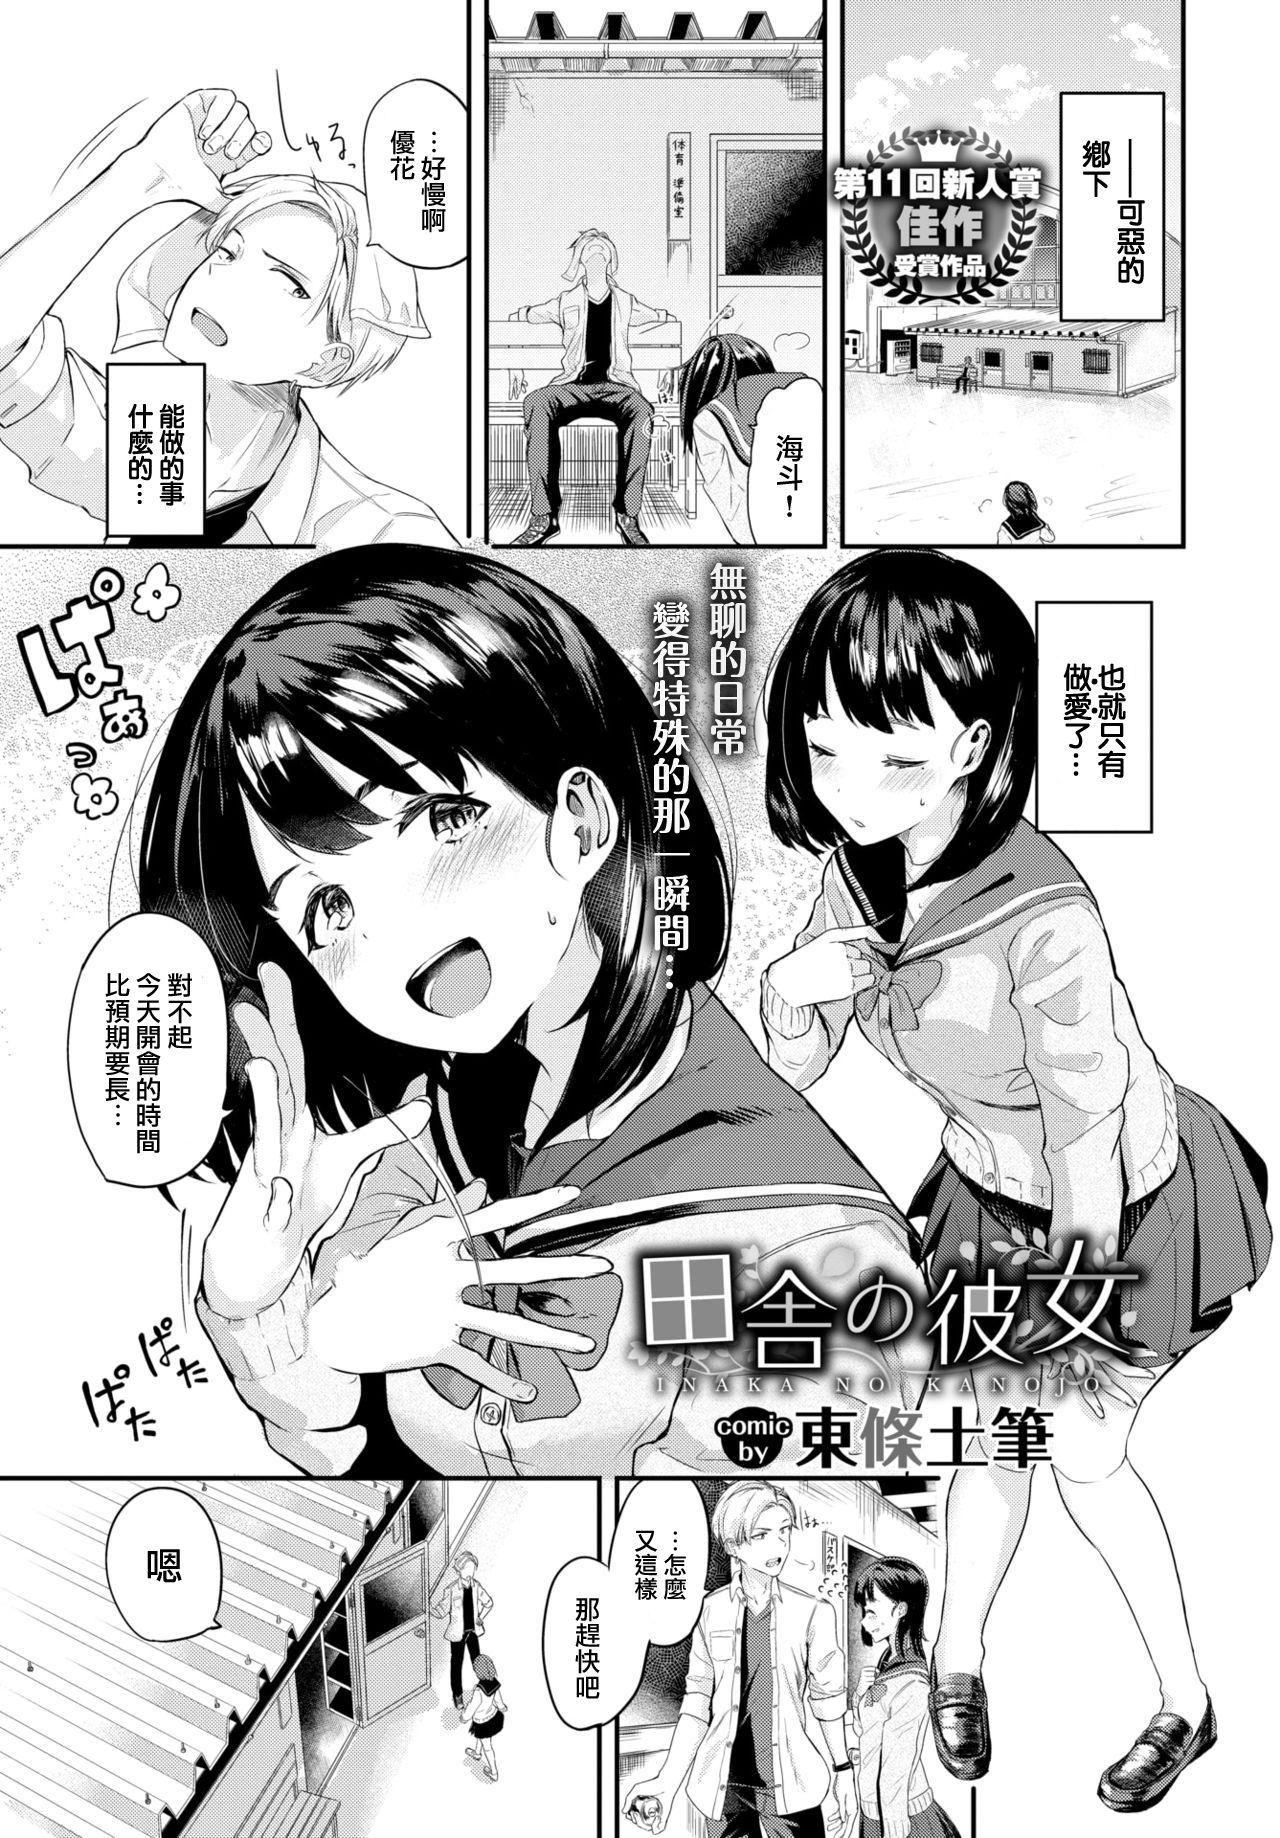 Slapping Inaka no Kanojo Virtual - Page 2